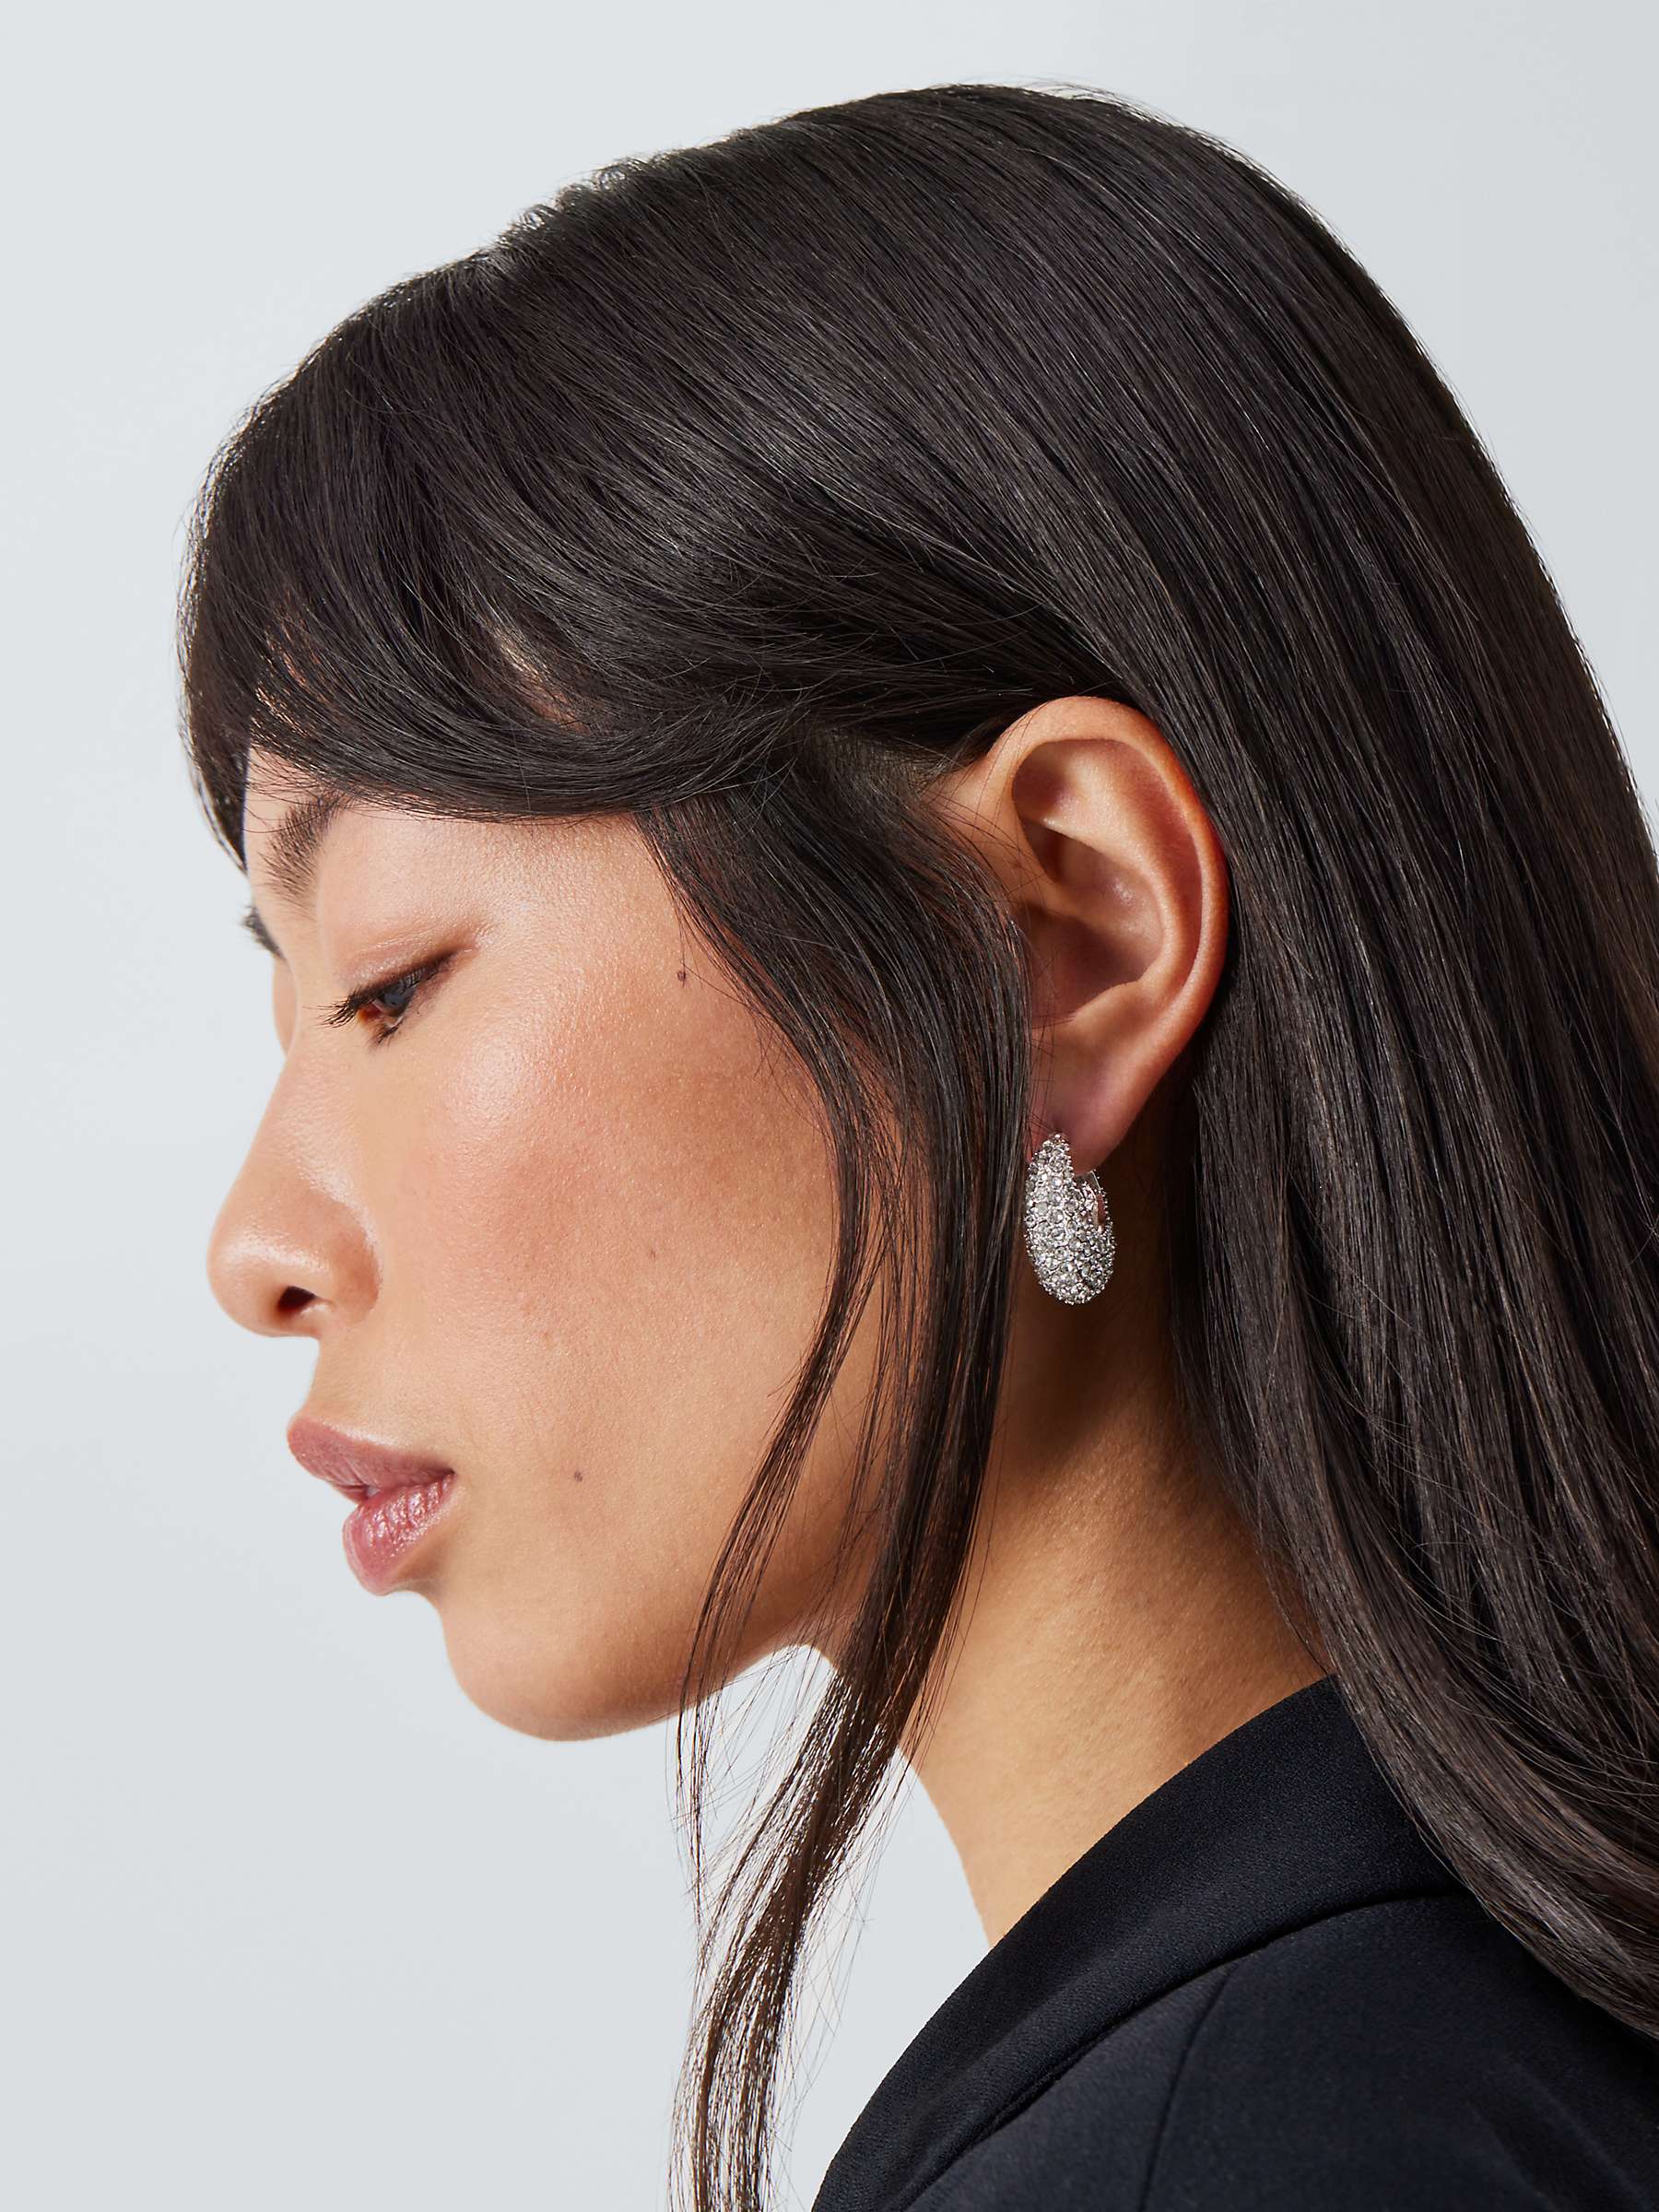 Buy John Lewis Diamante Encrusted Half Hoop Earrings, Silver Online at johnlewis.com